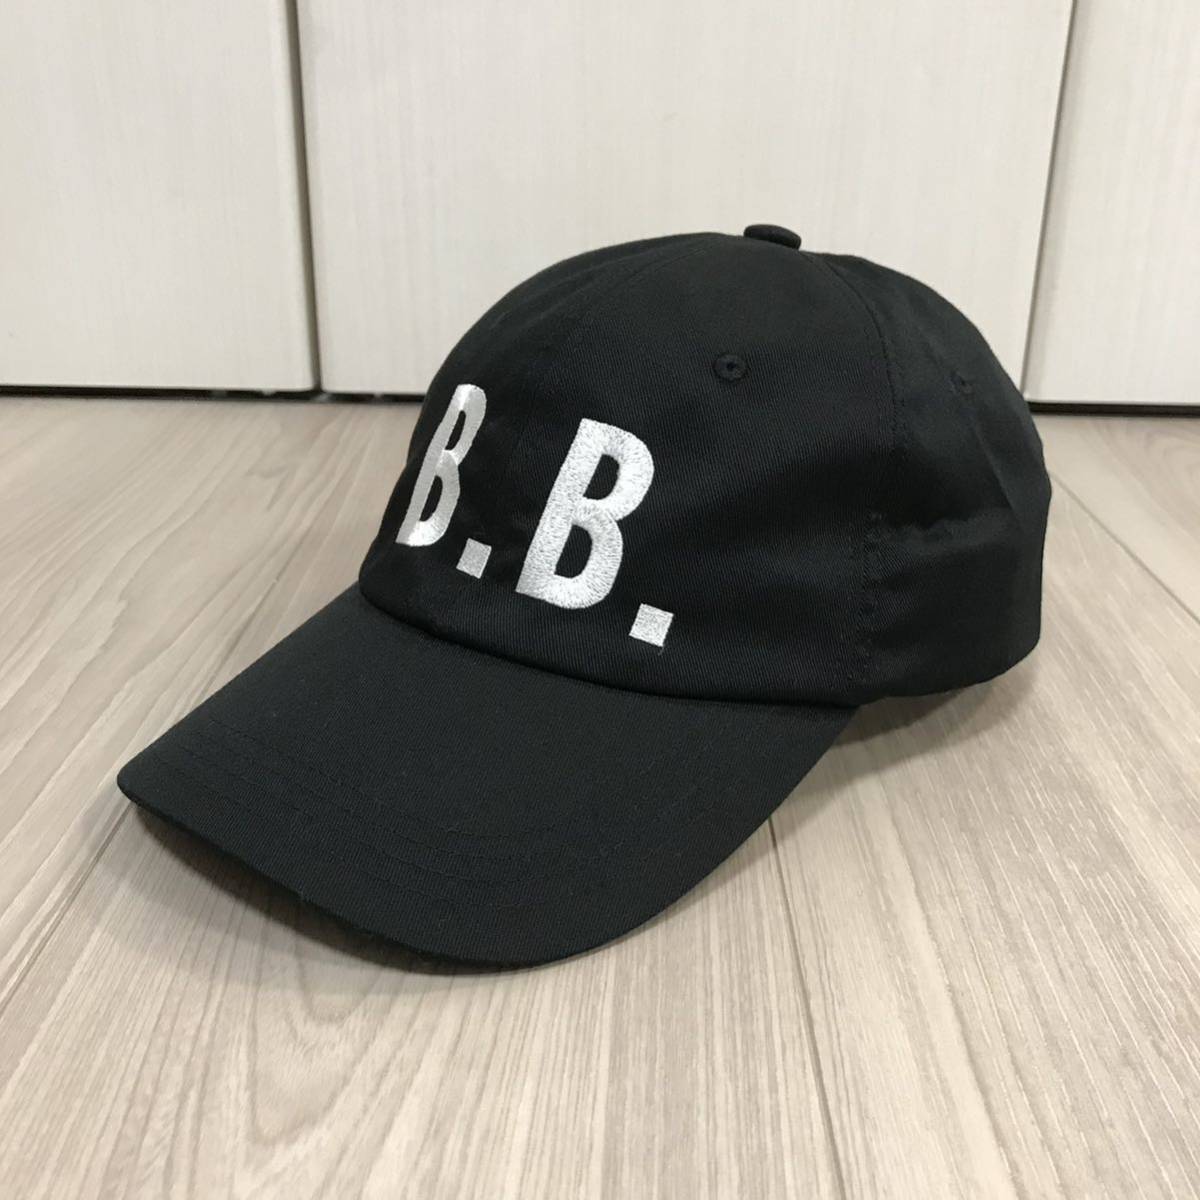 新品brooks brothers black bb b.b. CAP 40th 40周年 限定 ロゴ ブルックスブラザーズ メンズ ベースボール キャップ 帽子 ブラック 刺繍